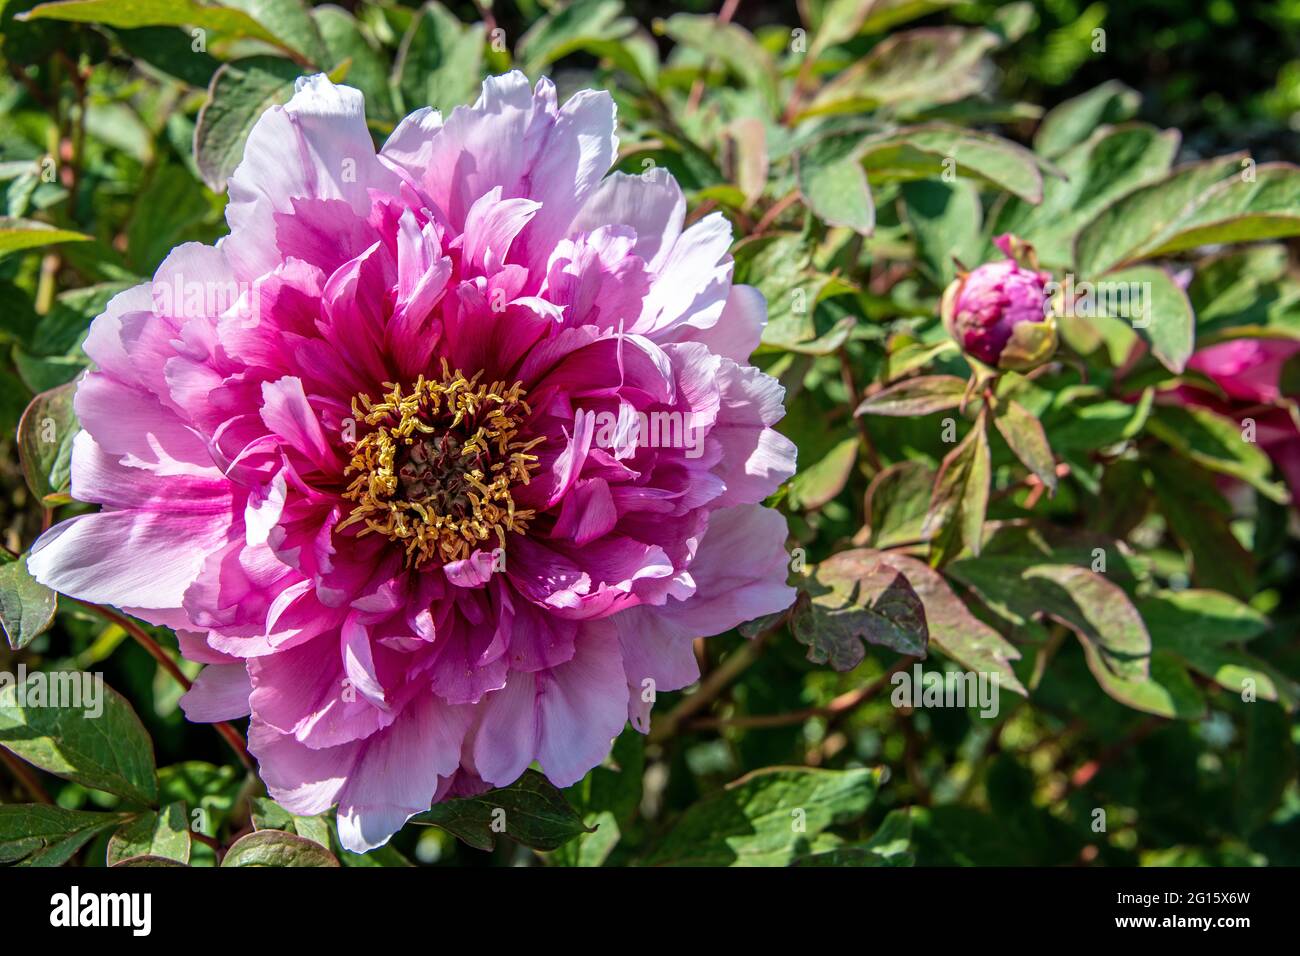 Vue ci-dessus d'une fleur ouverte d'une paeonia dans les couleurs rose et blanc Banque D'Images